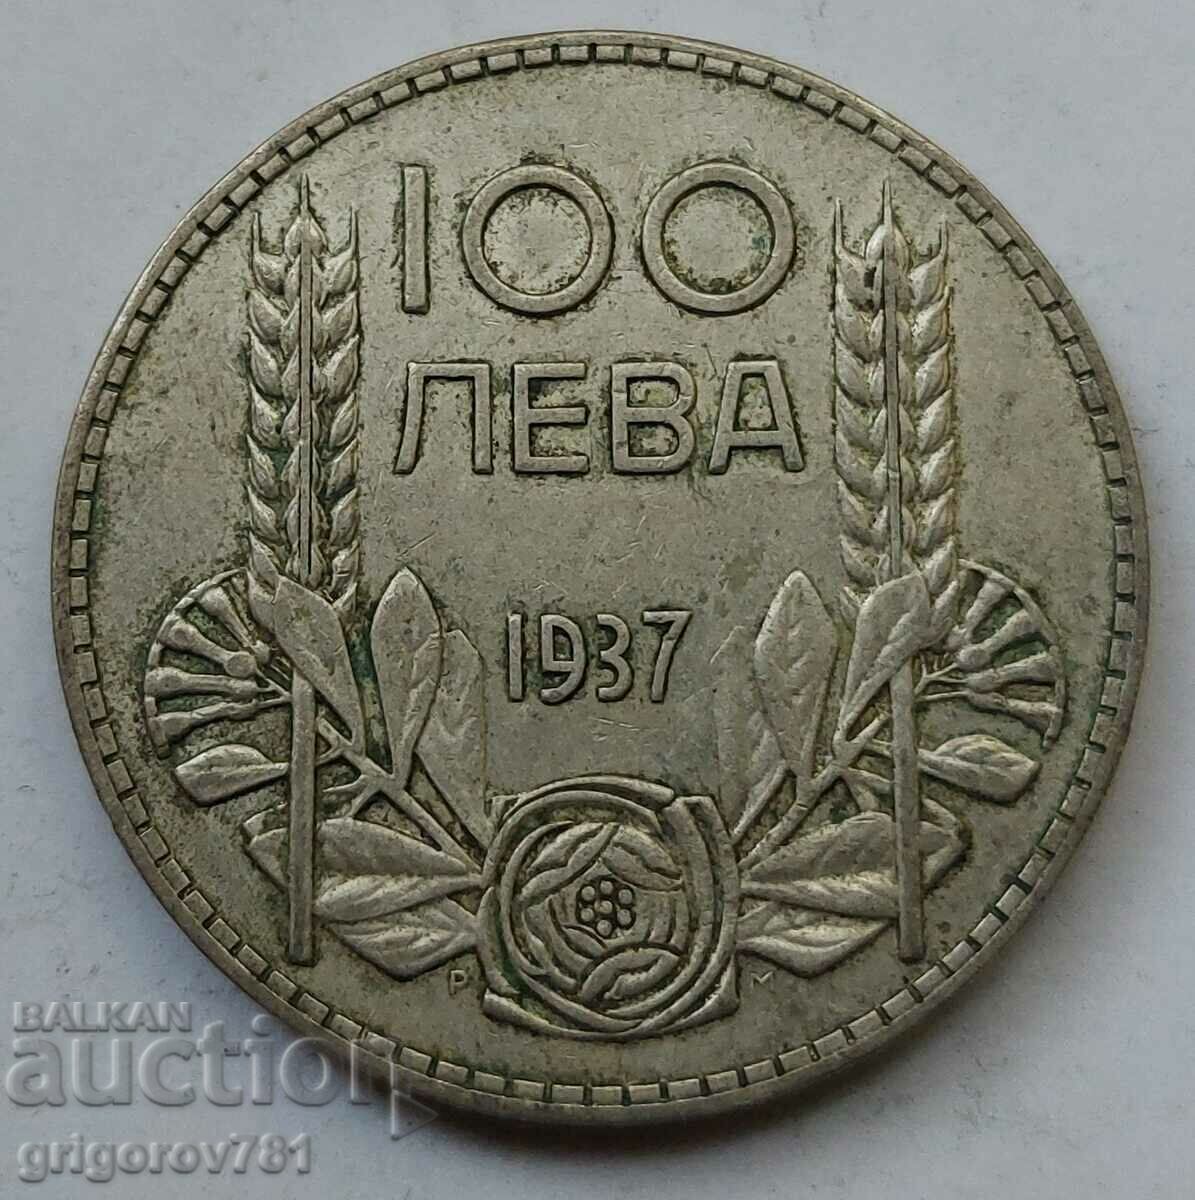 100 leva silver Bulgaria 1937 - silver coin #78